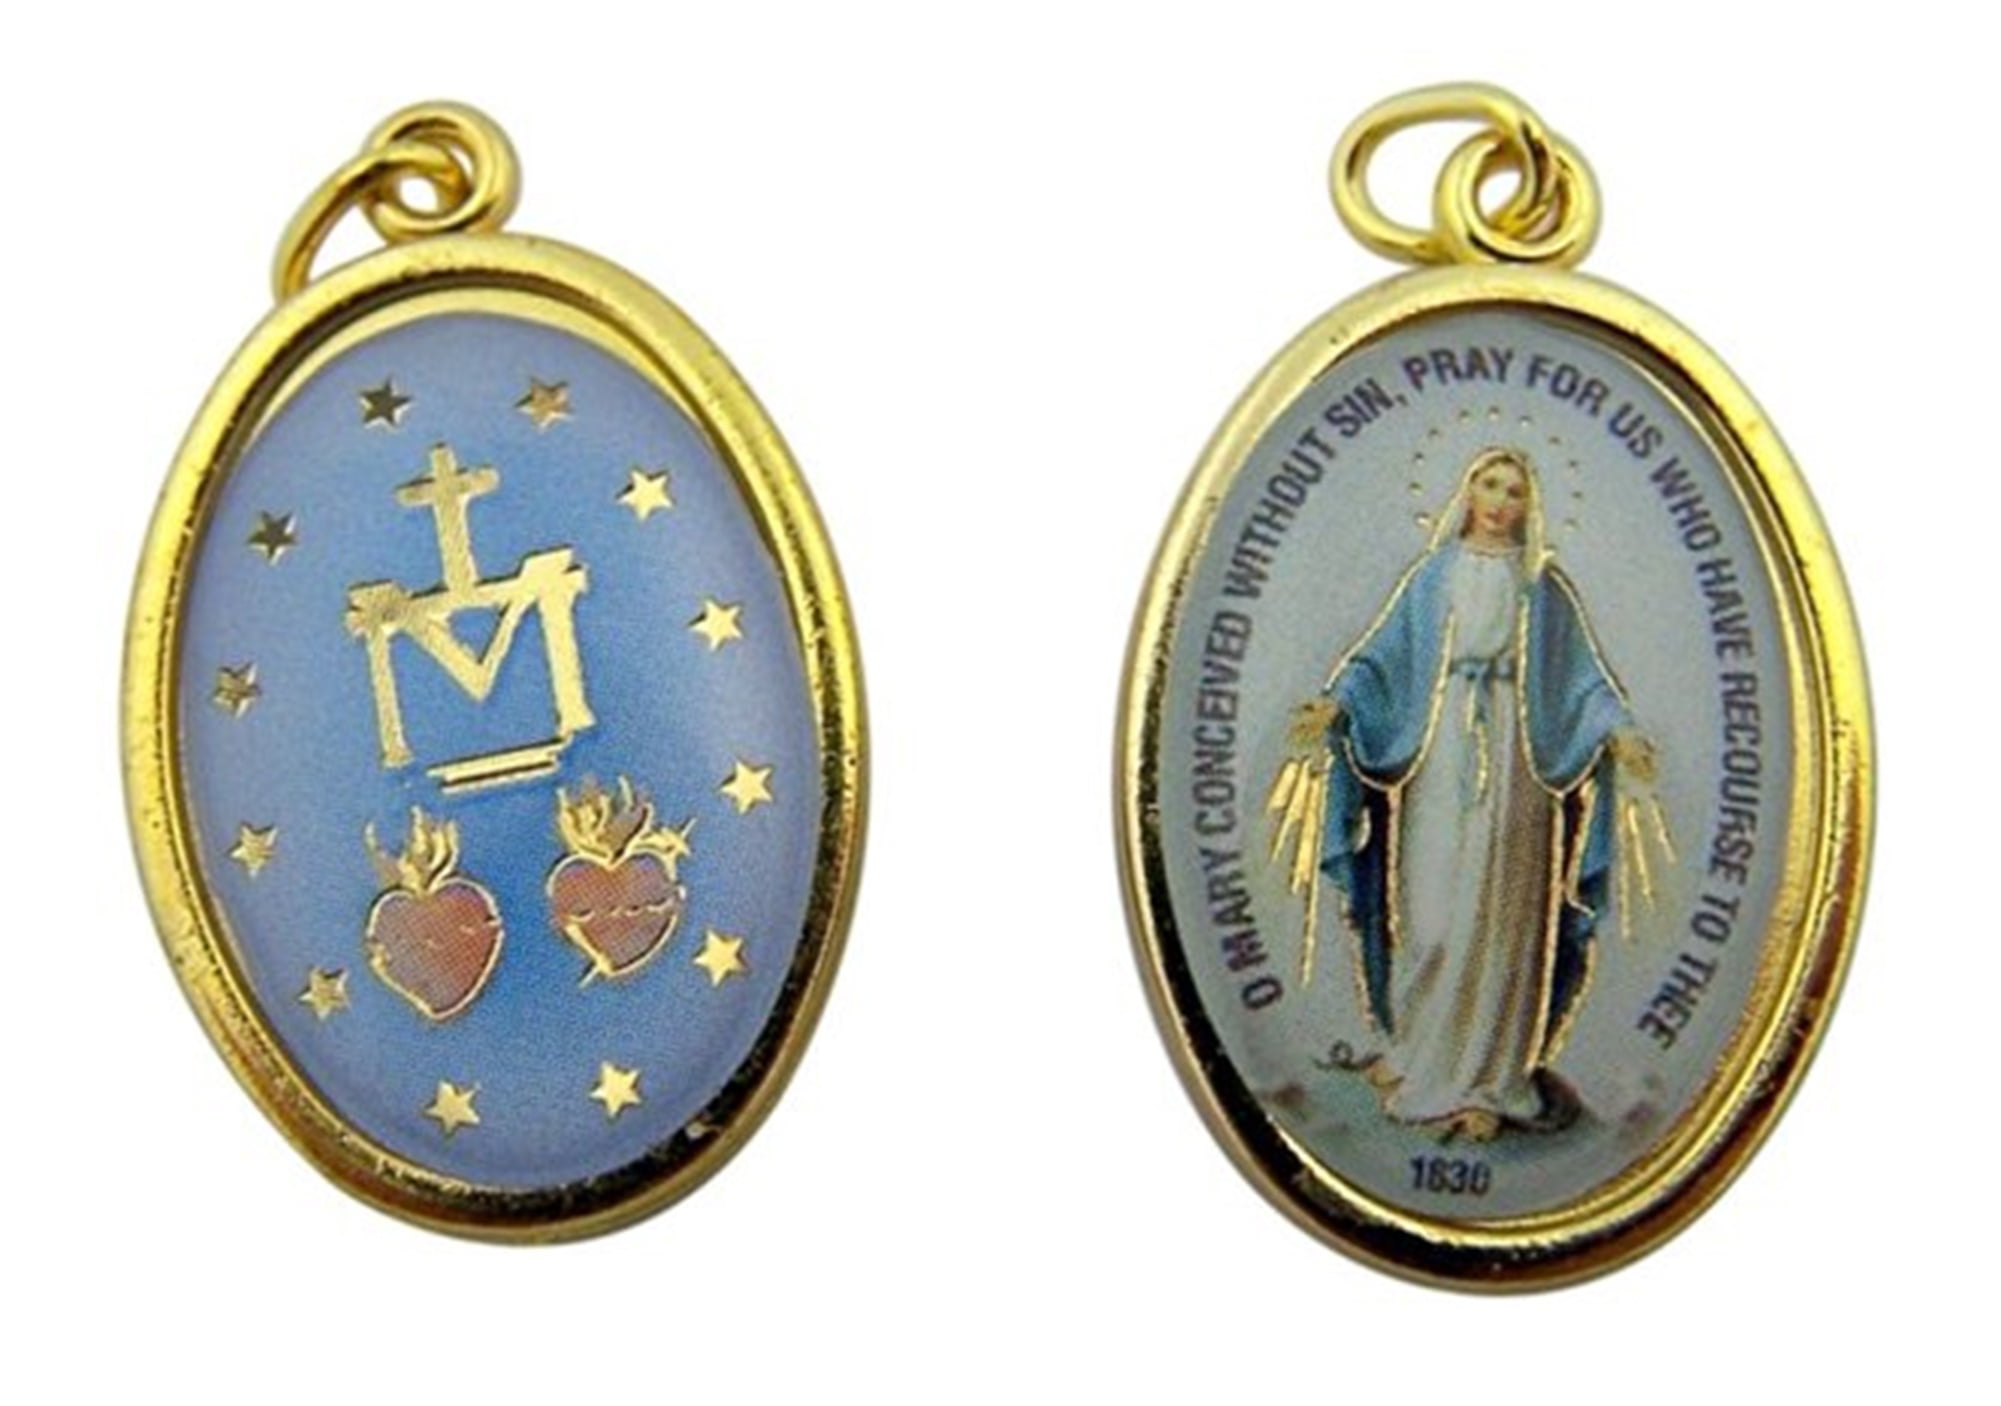 Miraculous Medal Symbol